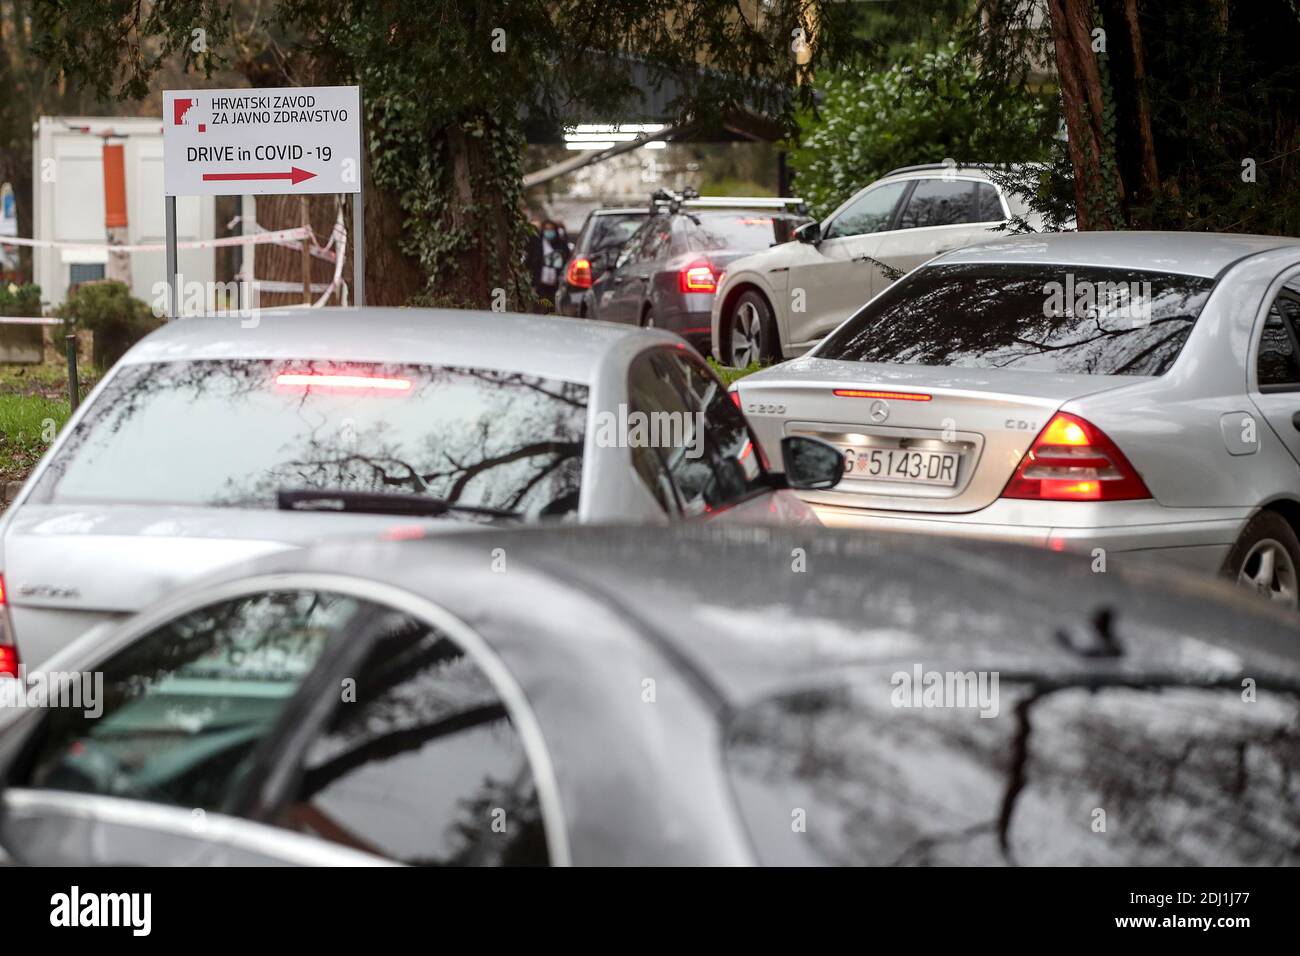 (201213) -- ZEGRED, 13. Dezember 2020 (Xinhua) -- Menschen warten in Autos auf COVID-19-Tests an einem Drive-in-Testplatz des Kroatischen Instituts für öffentliche Gesundheit in Zagreb, Kroatien, 12. Dezember 2020. (Igor Kralj/Pixsell über Xinhua) Stockfoto